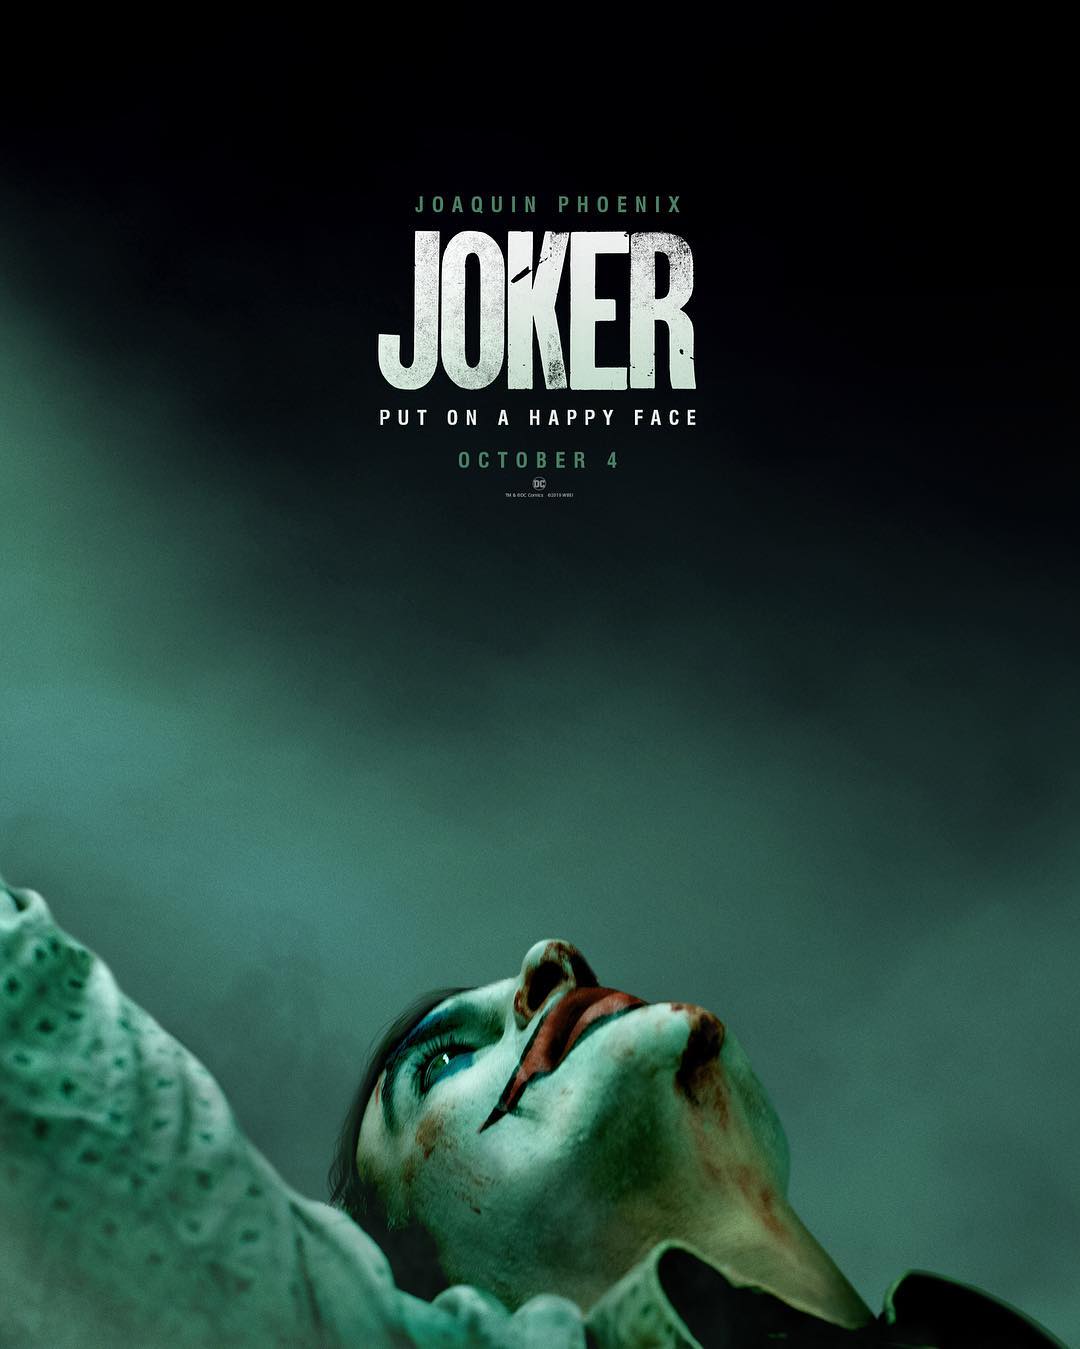 Joaquin Phoenix's Joker Trailer Has Launched